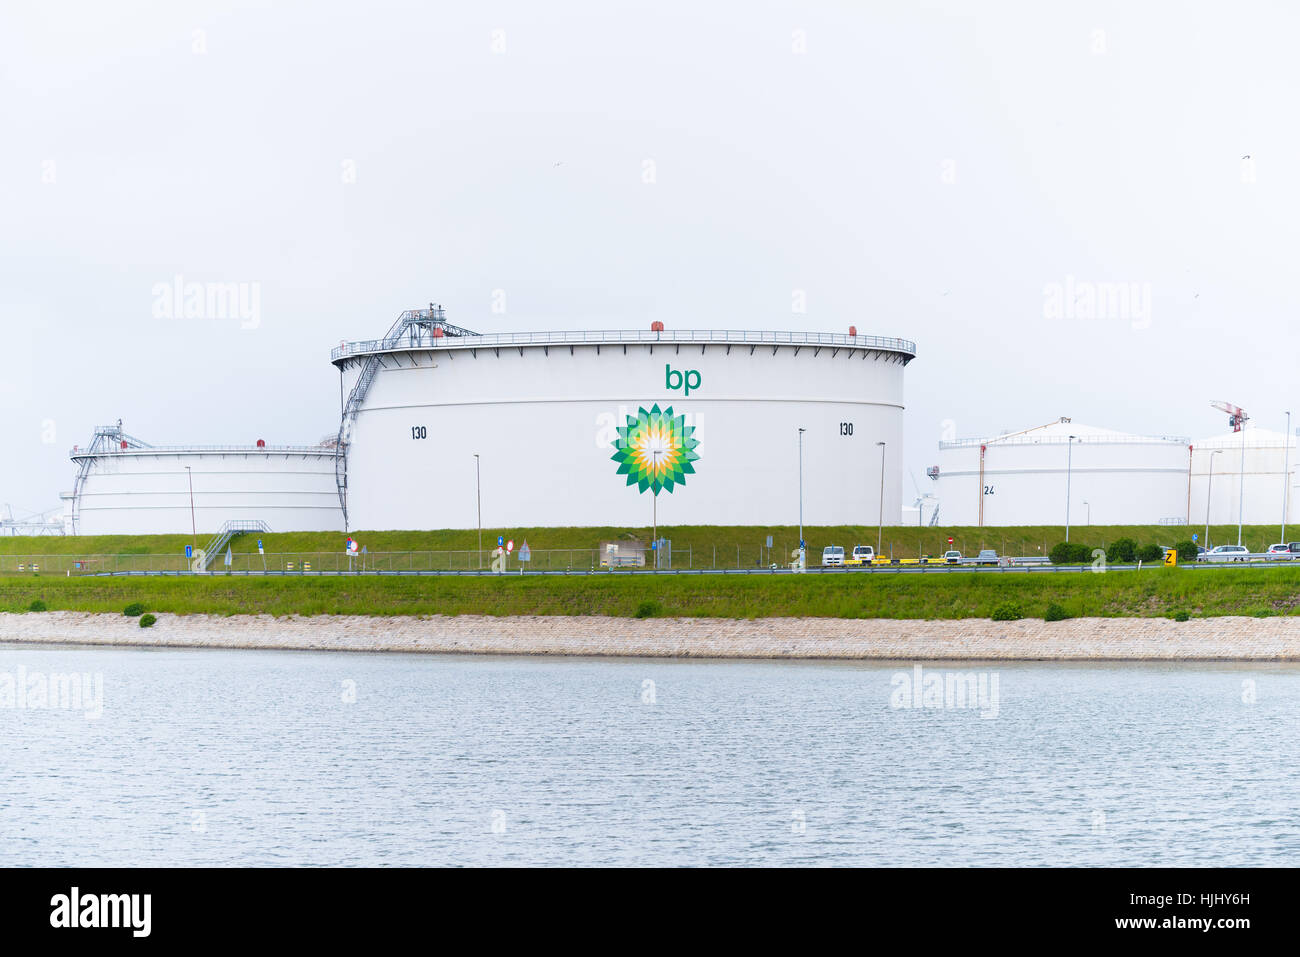 ROTTERDAM, Pays-Bas - le 14 mai 2016 : de grands réservoirs de pétrole de BP dans le quartier du port de Rotterdam. Banque D'Images